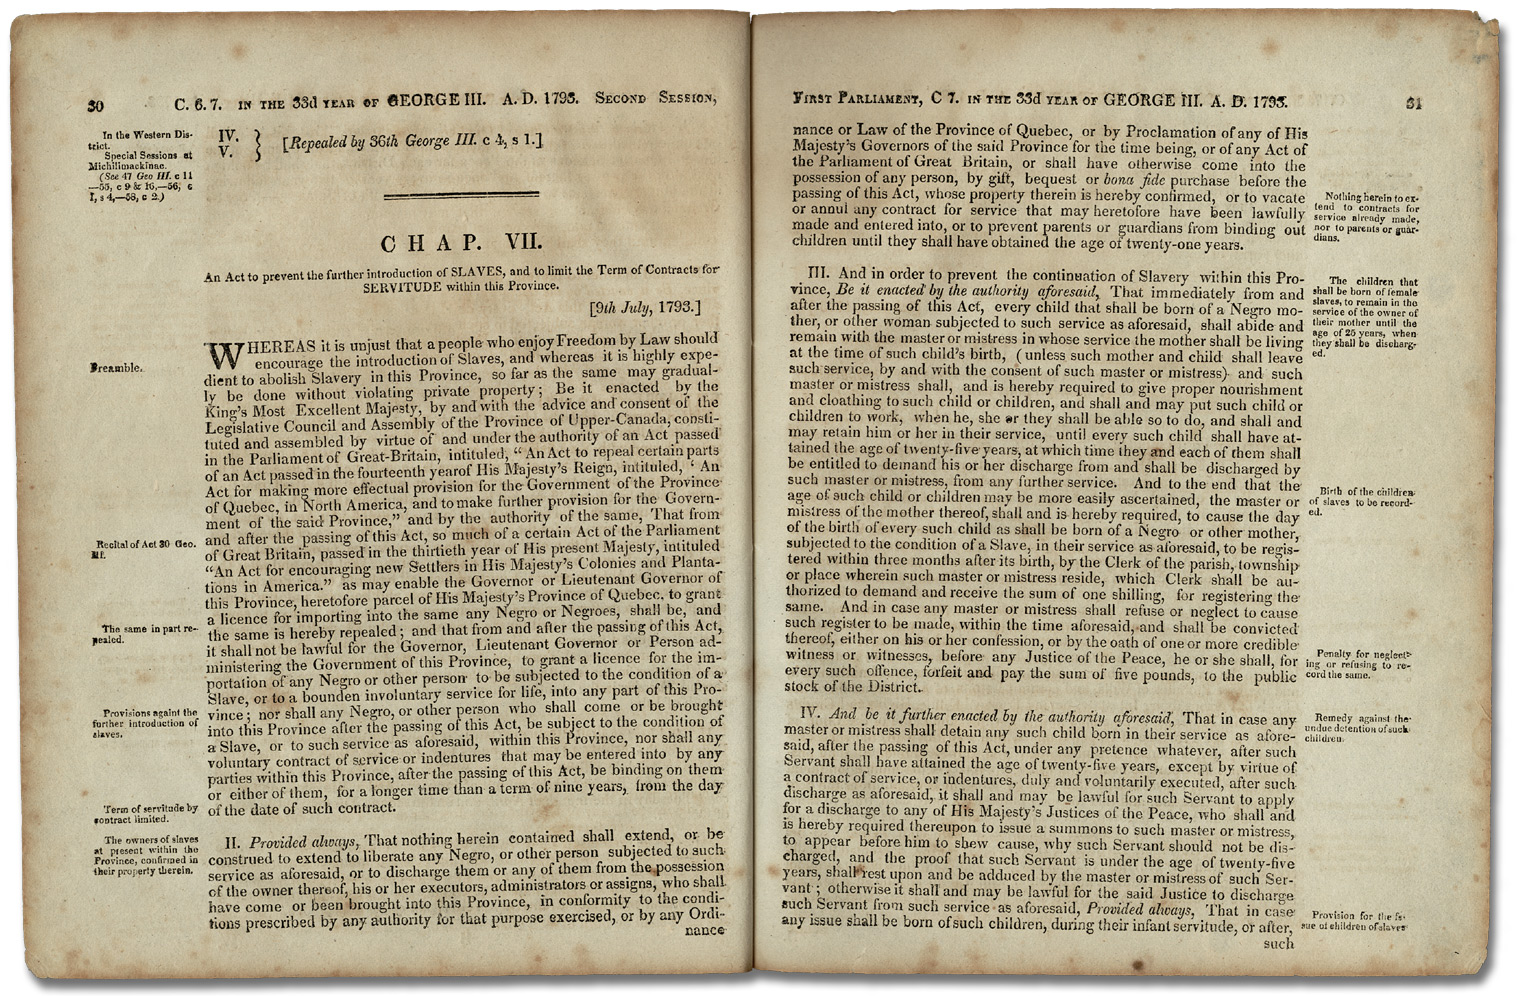 Loi pour emêcher l'entrée d'autres esclaves et pour limiter la durée des contrats de servitude Cap. 7, 33 George III, 1793